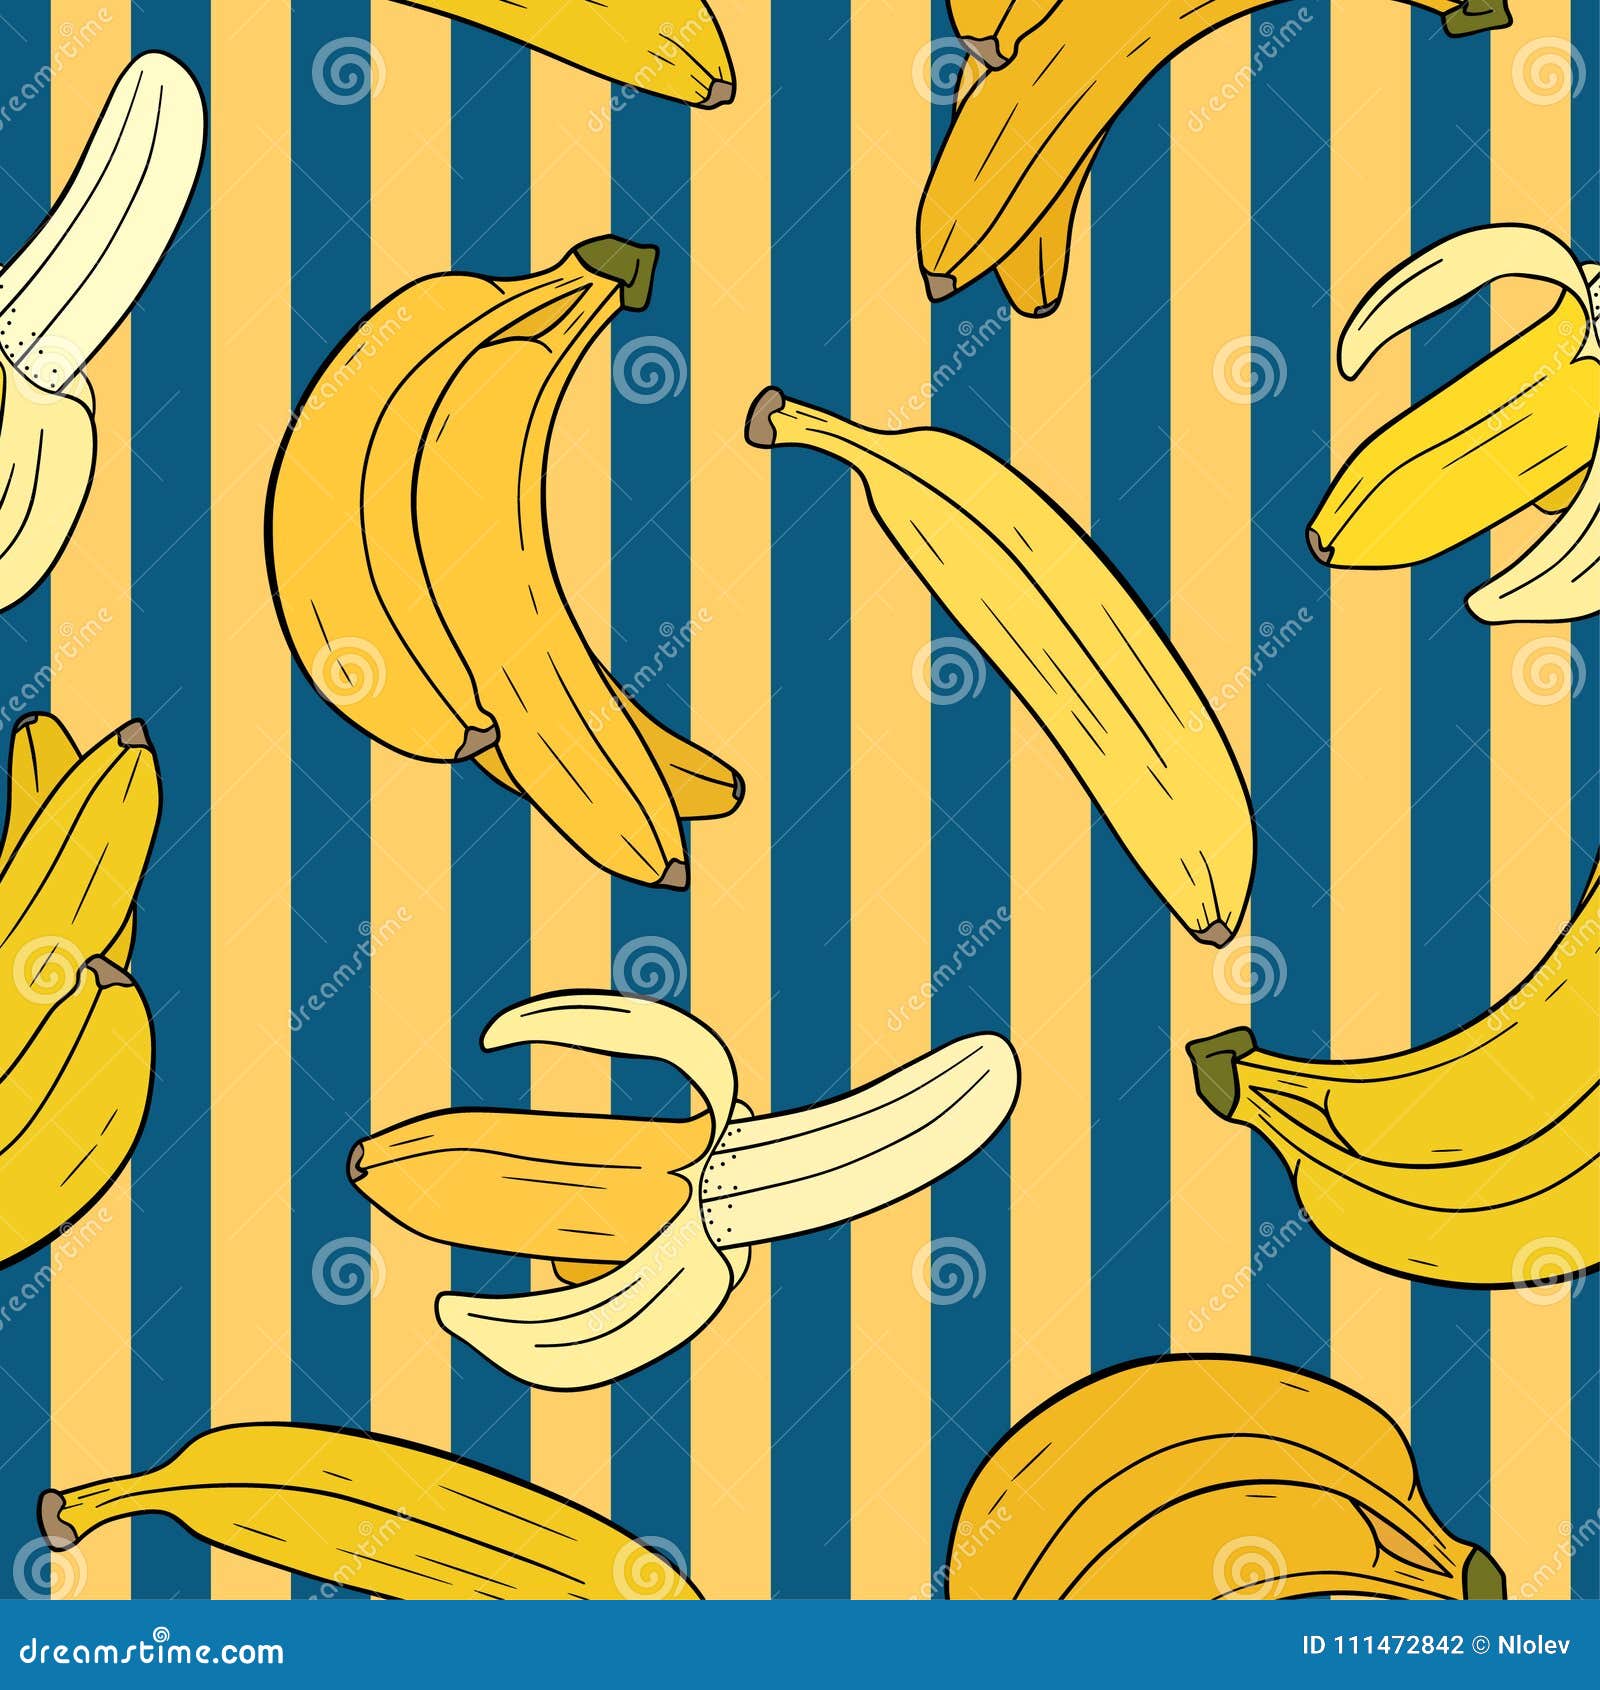 Ilustração de desenhos animados de banana padrão sem emenda